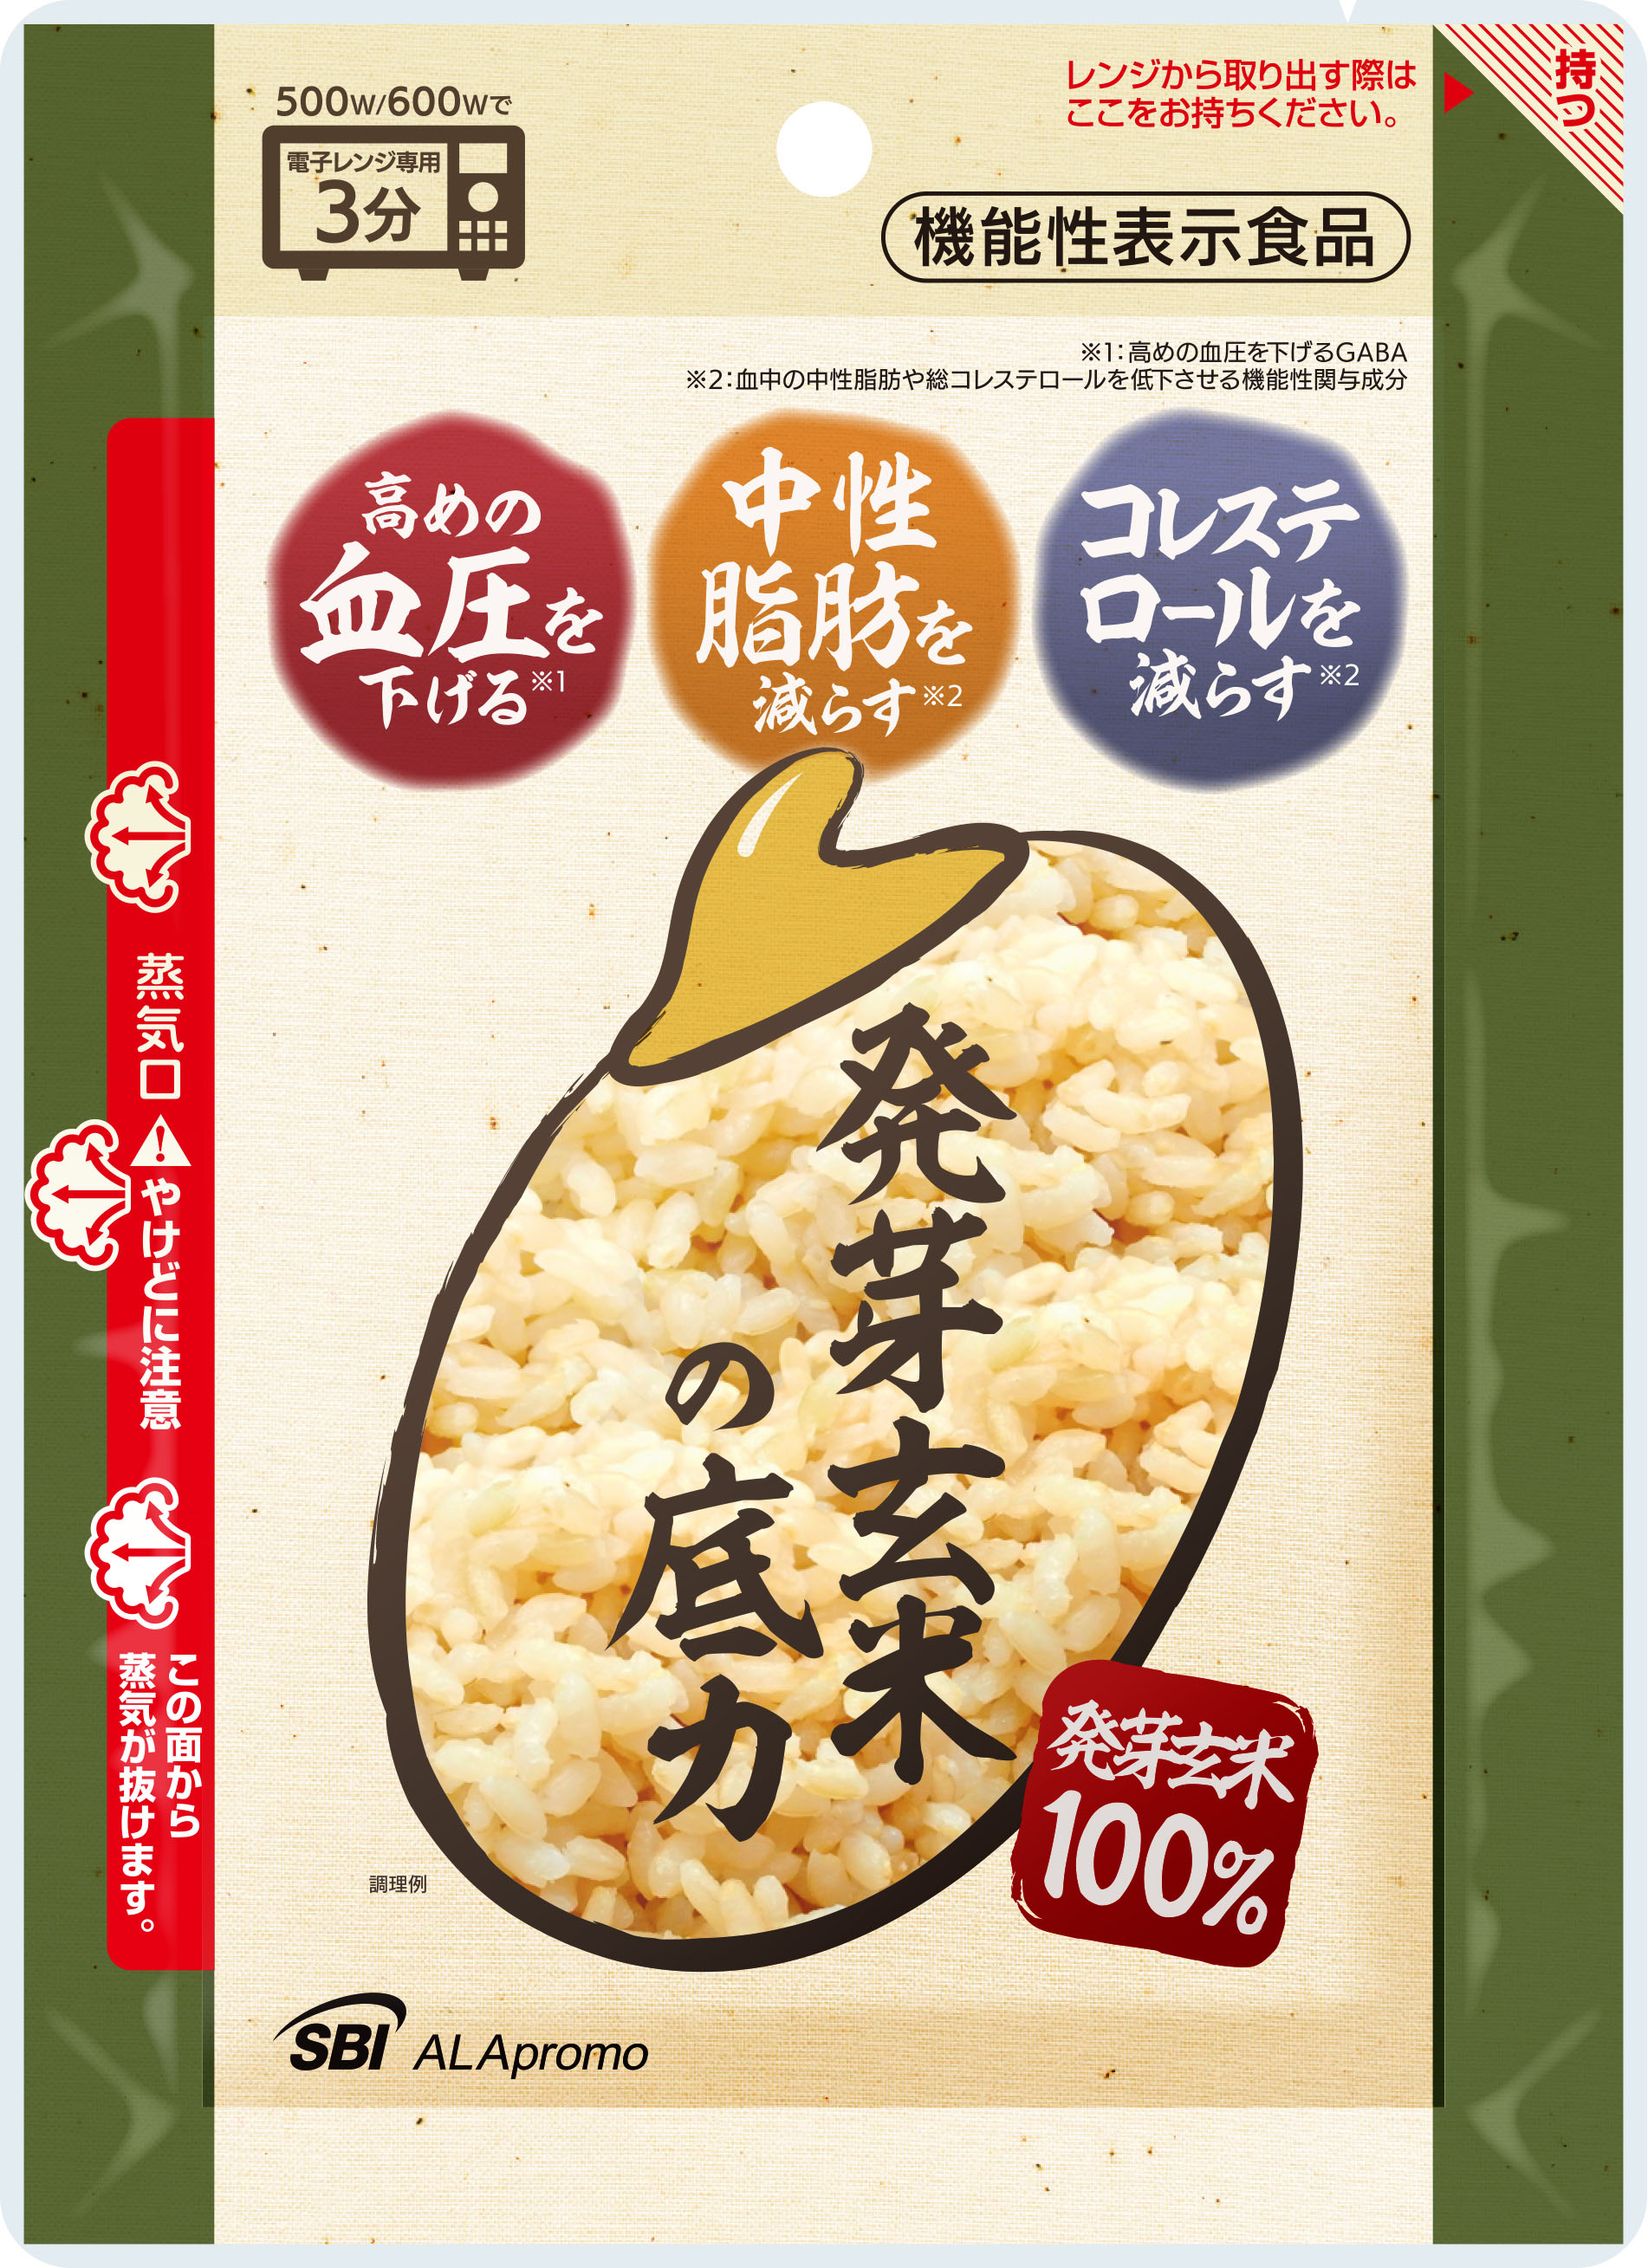 ２つの日本初 血圧 中性脂肪 総コレステロールのトリプルサポート 1 2 機能性表示食品 発芽玄米 の底力 発売のお知らせ ｓｂｉアラプロモ株式会社のプレスリリース